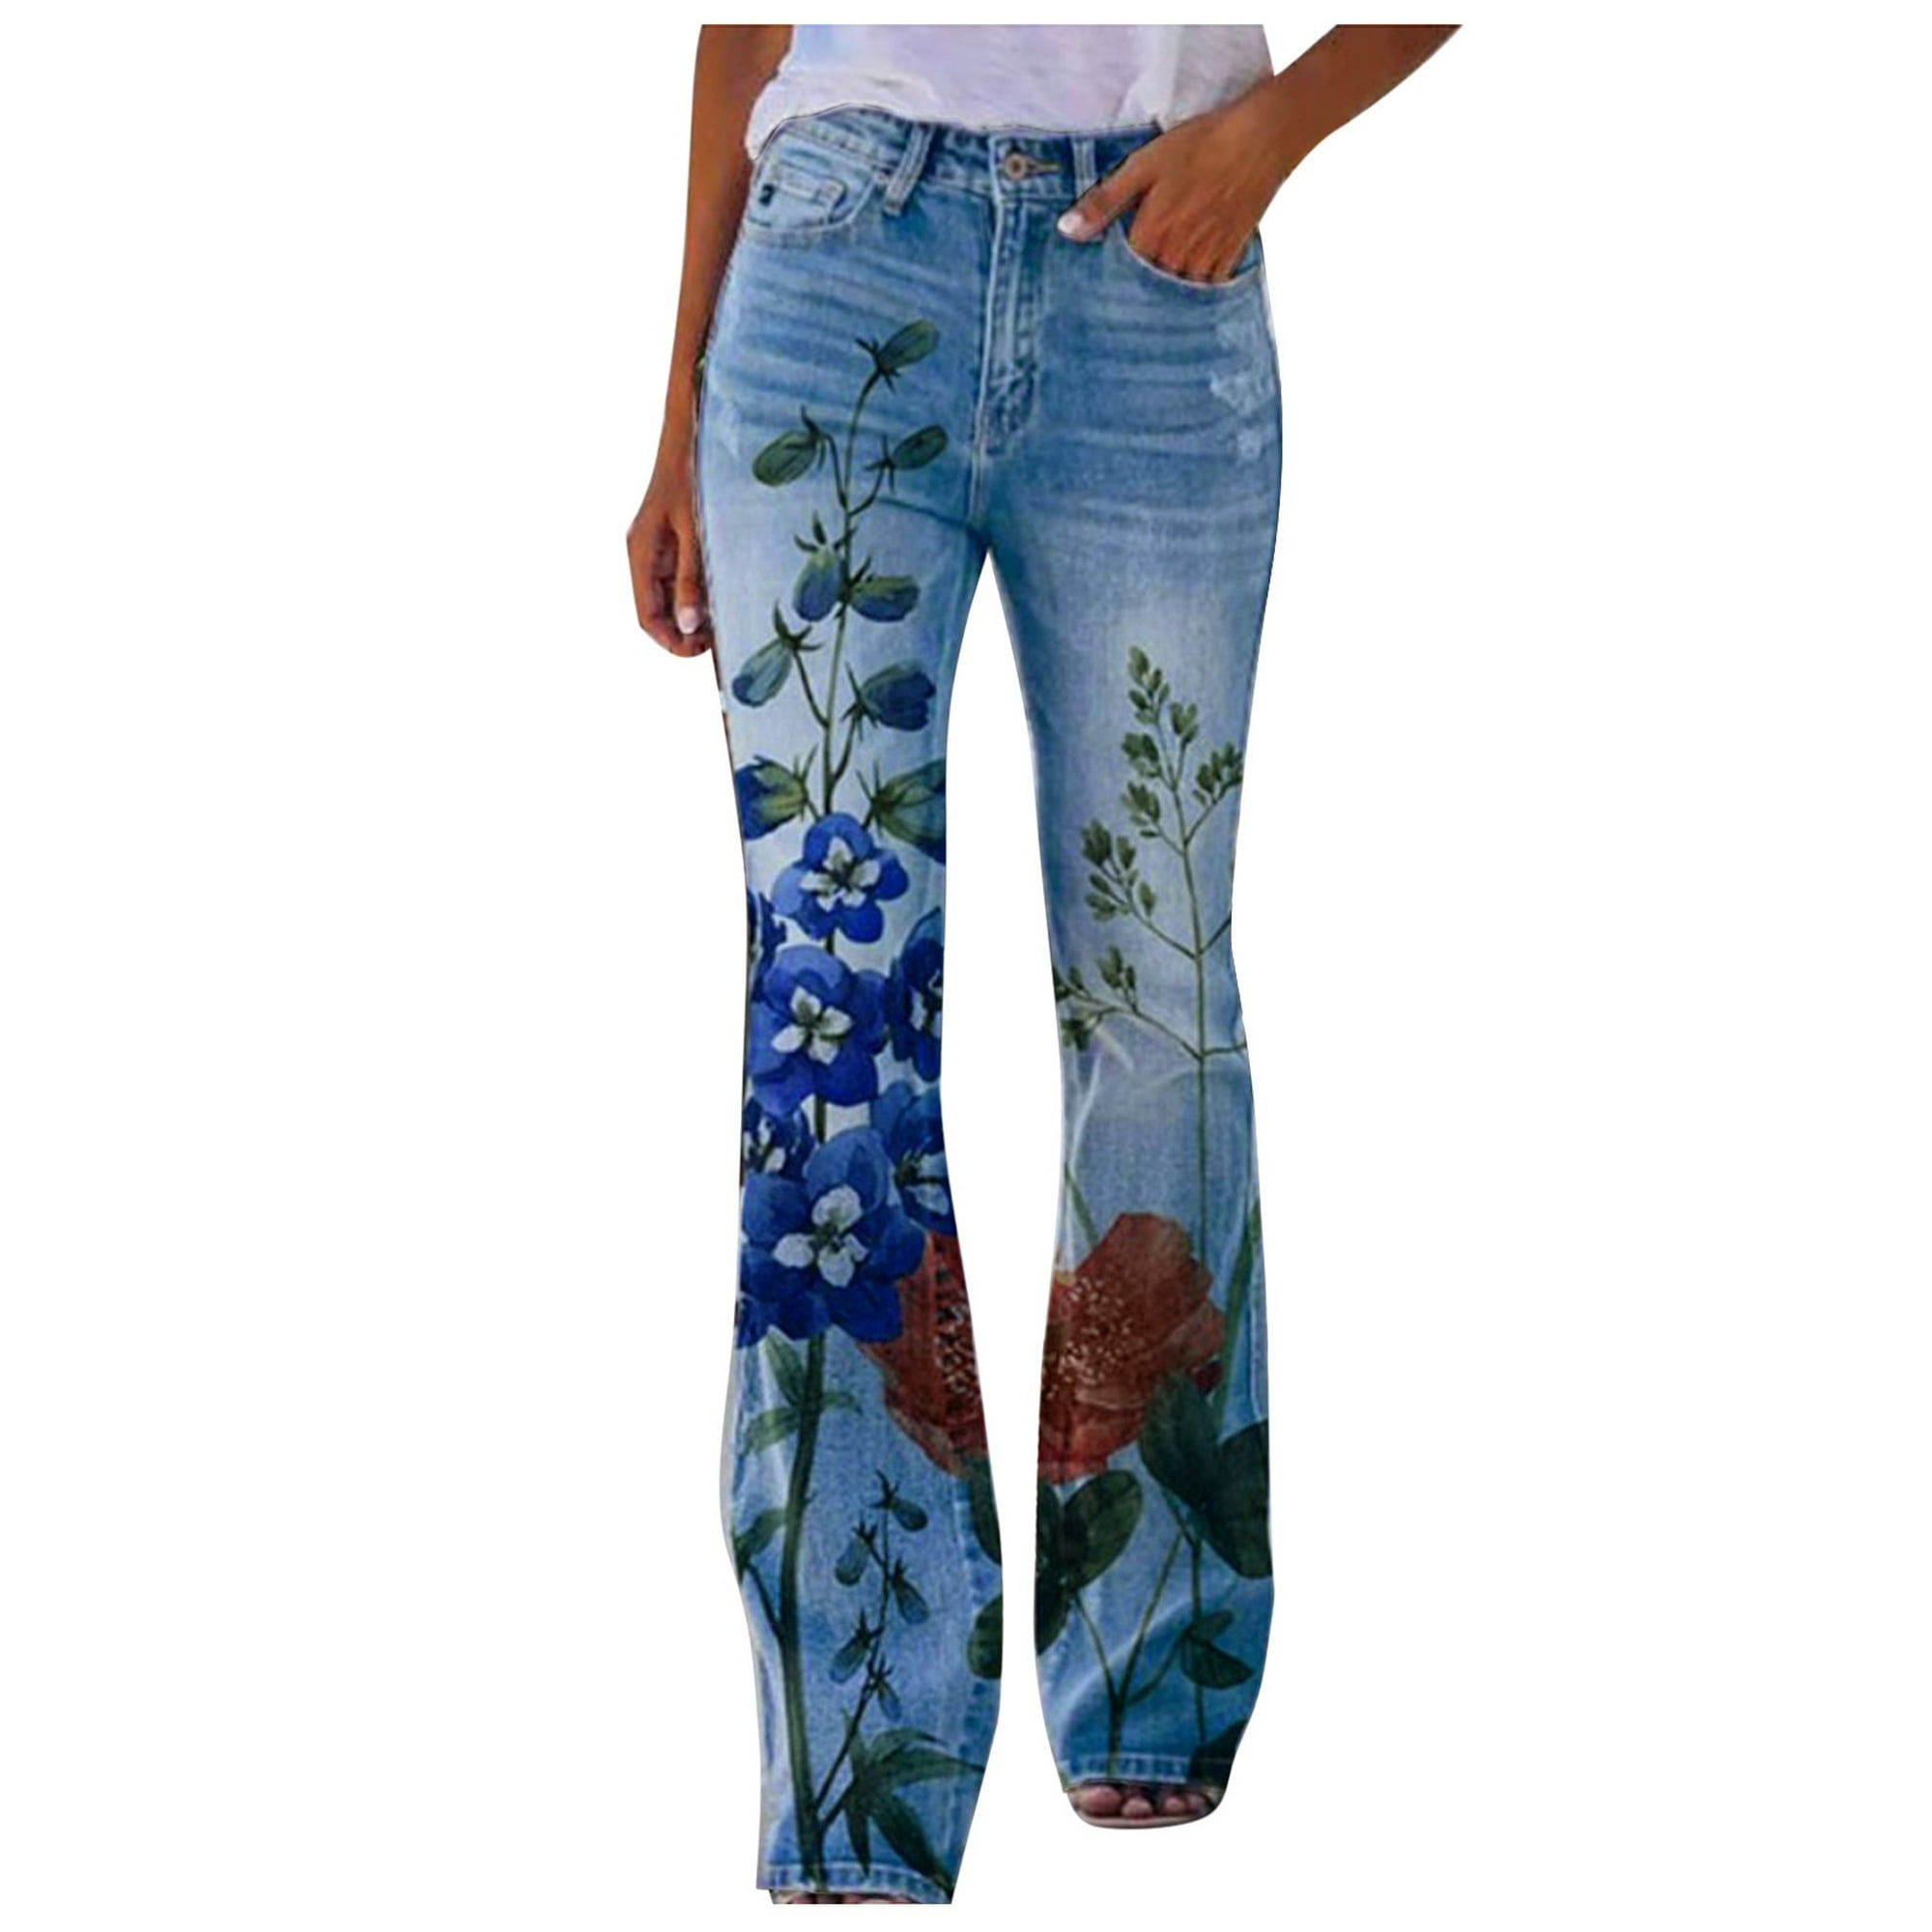 Pantalones sueltos casuales pantalones de mujer de pierna ancha de tejido  de poliéster transpirable para viajes LHCER Otros